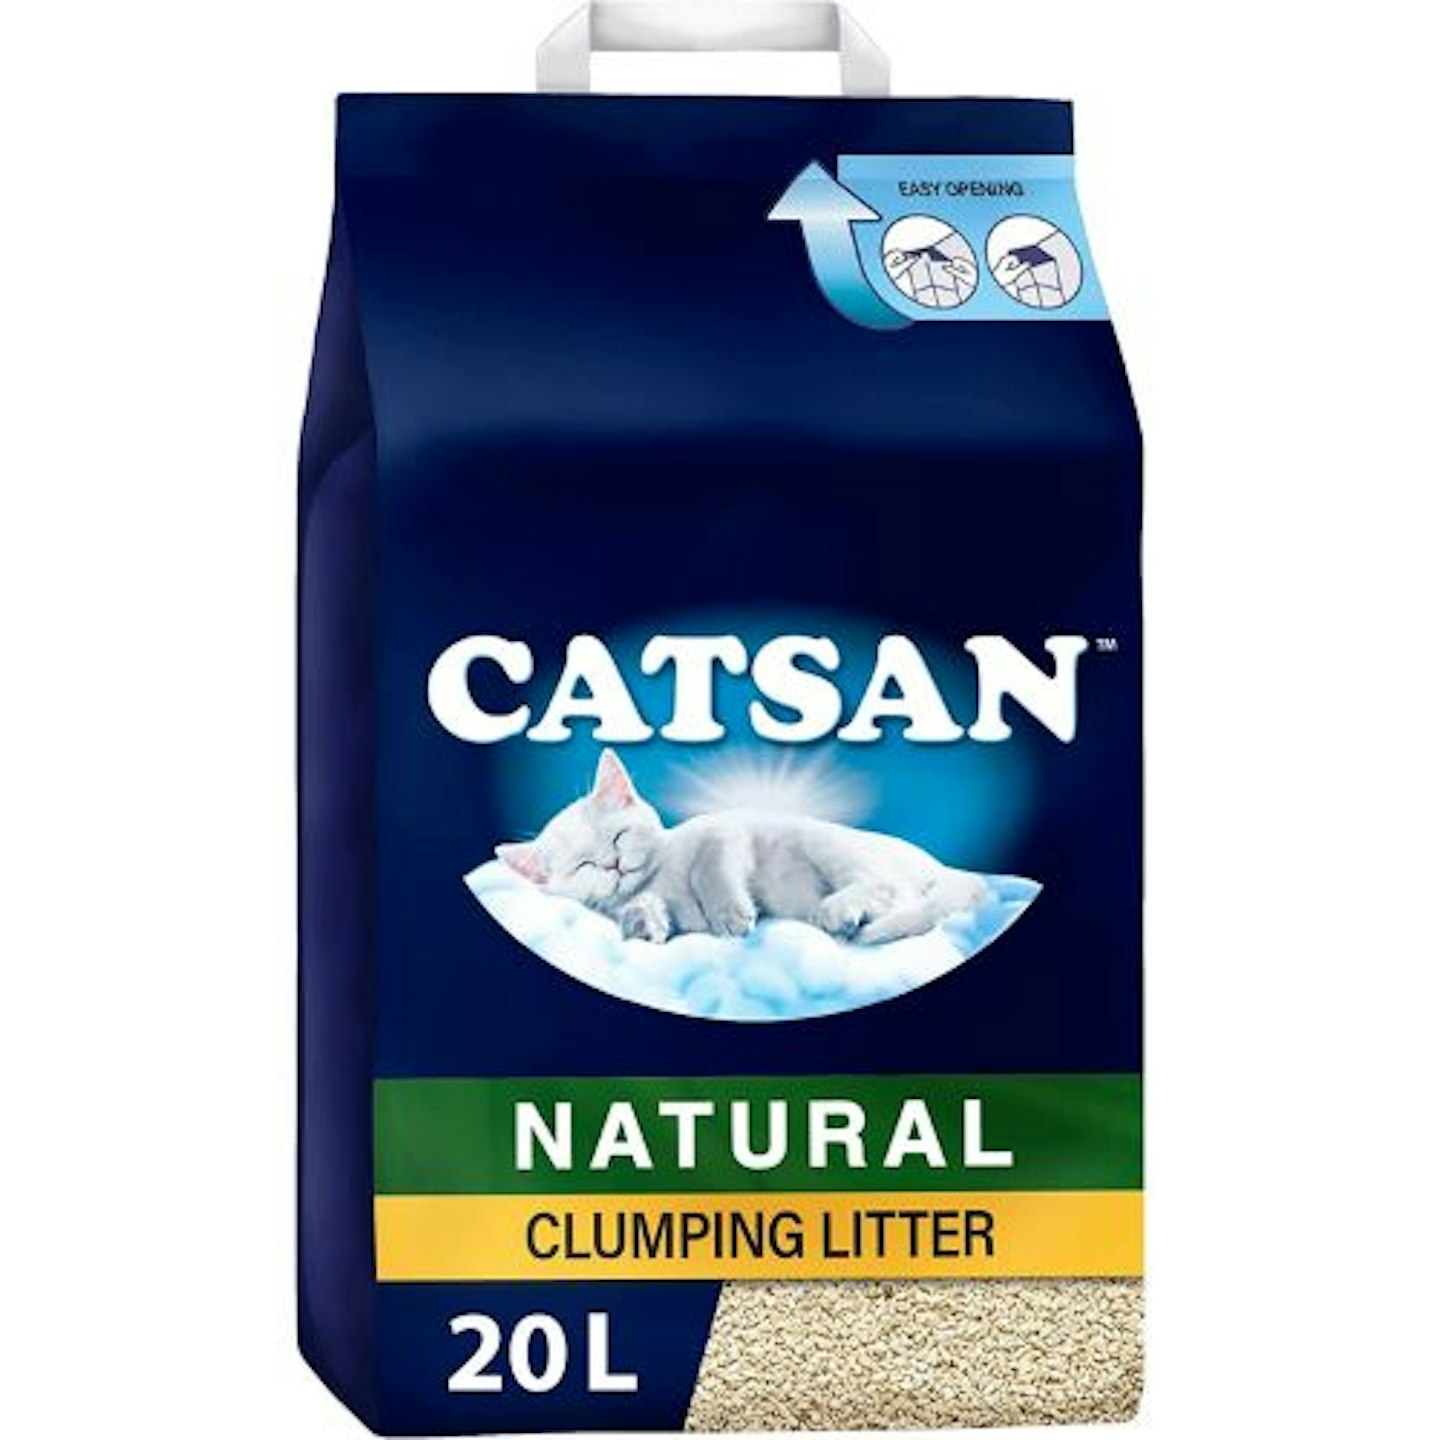 Catsan Natural Clumping Cat Litter